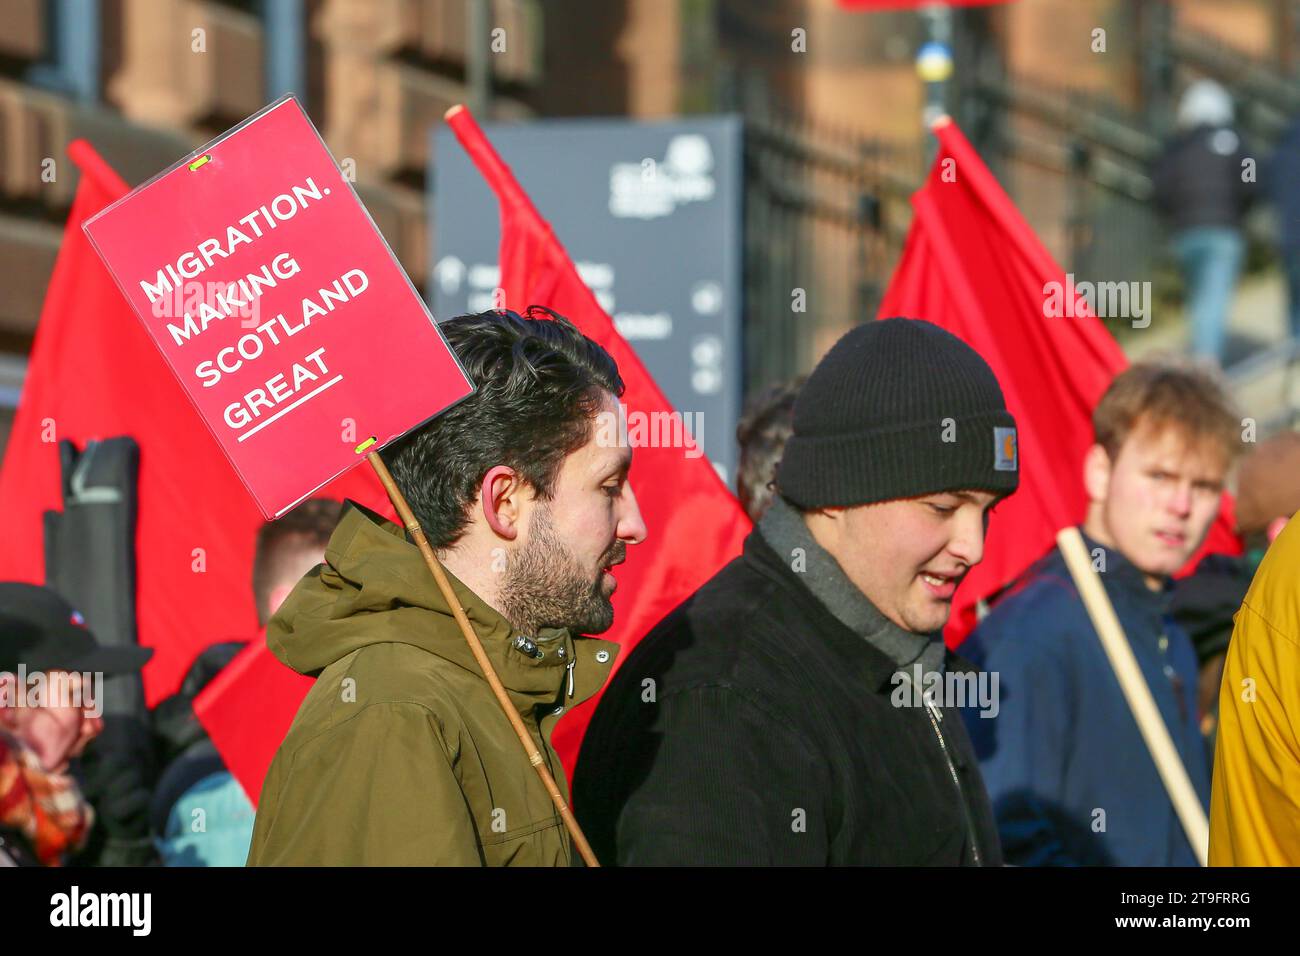 November 23. Glasgow, Großbritannien. Die jährliche St. Andrew's Day Parade fand im Stadtzentrum von Glasgow statt, in der sich verschiedene linke, sozialistische und politische Gruppen aufhielten. Die Parade findet jährlich am letzten Samstag im November statt. ANAS SARWAR, MSP, Vorsitzender der Scottish Labour Party, nahm an der Parade Teil. Quelle: Findlay/Alamy Live News Stockfoto